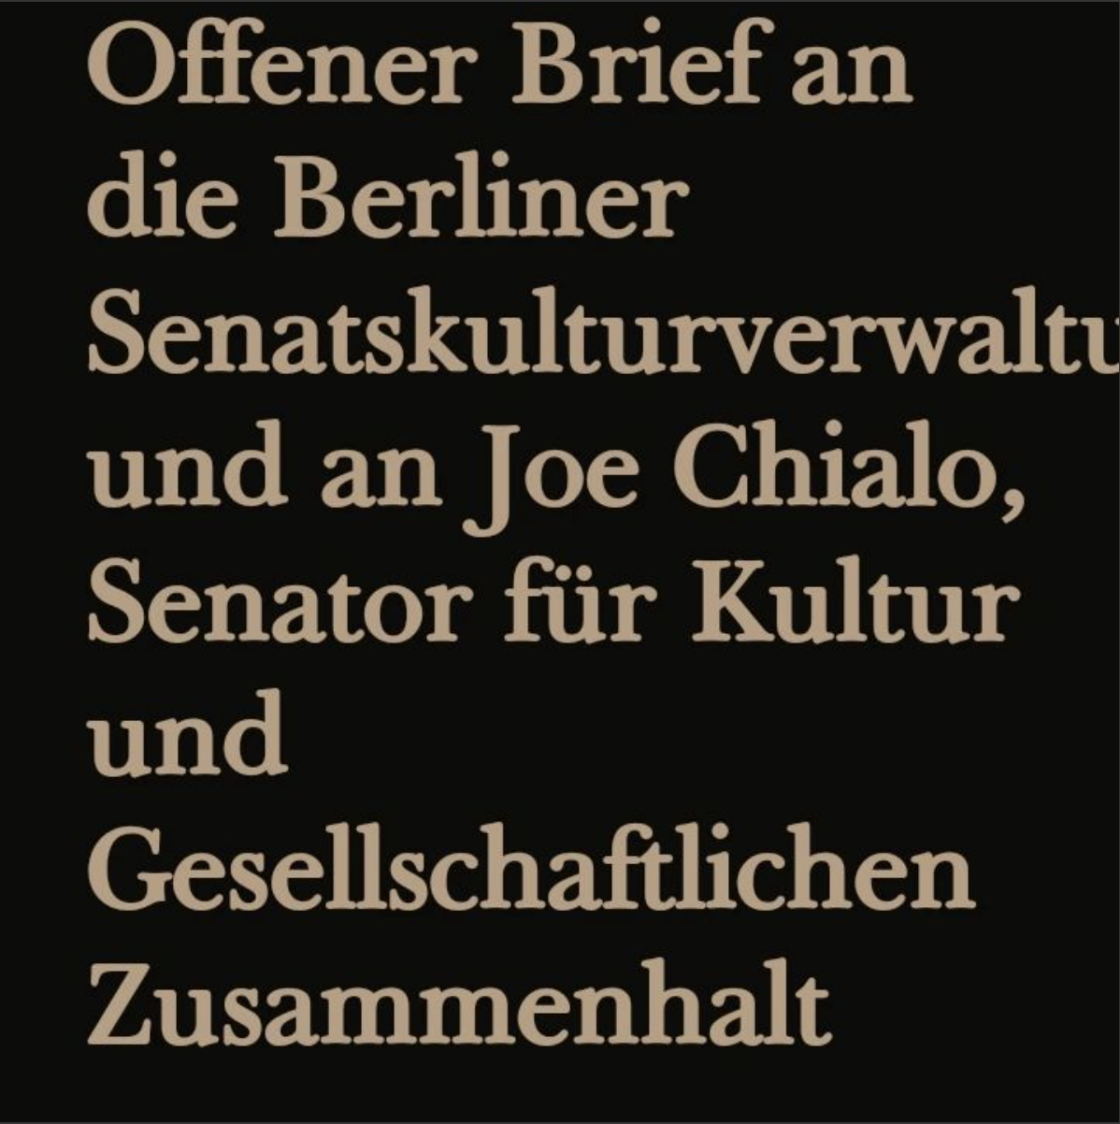 Offener Brief an die Berliner Senatskulturverwaltung und an Joe Chialo, Senator für Kultur und Gesellschaftlichen Zusammenhalt